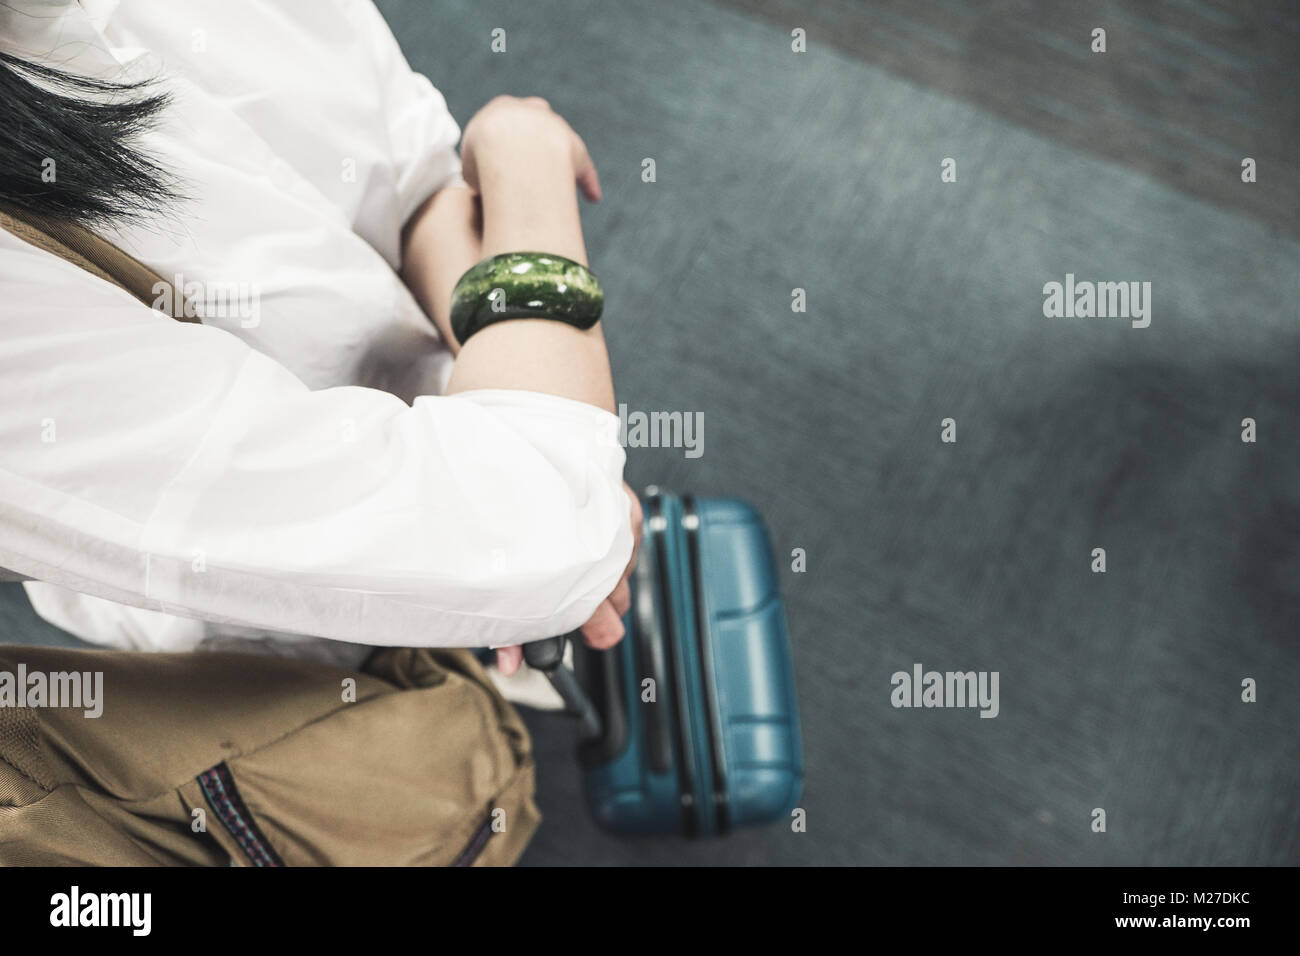 Woman backpacker avec valise debout à l'arrivée dans les bagages à l'aéroport,meilleur concept. Banque D'Images